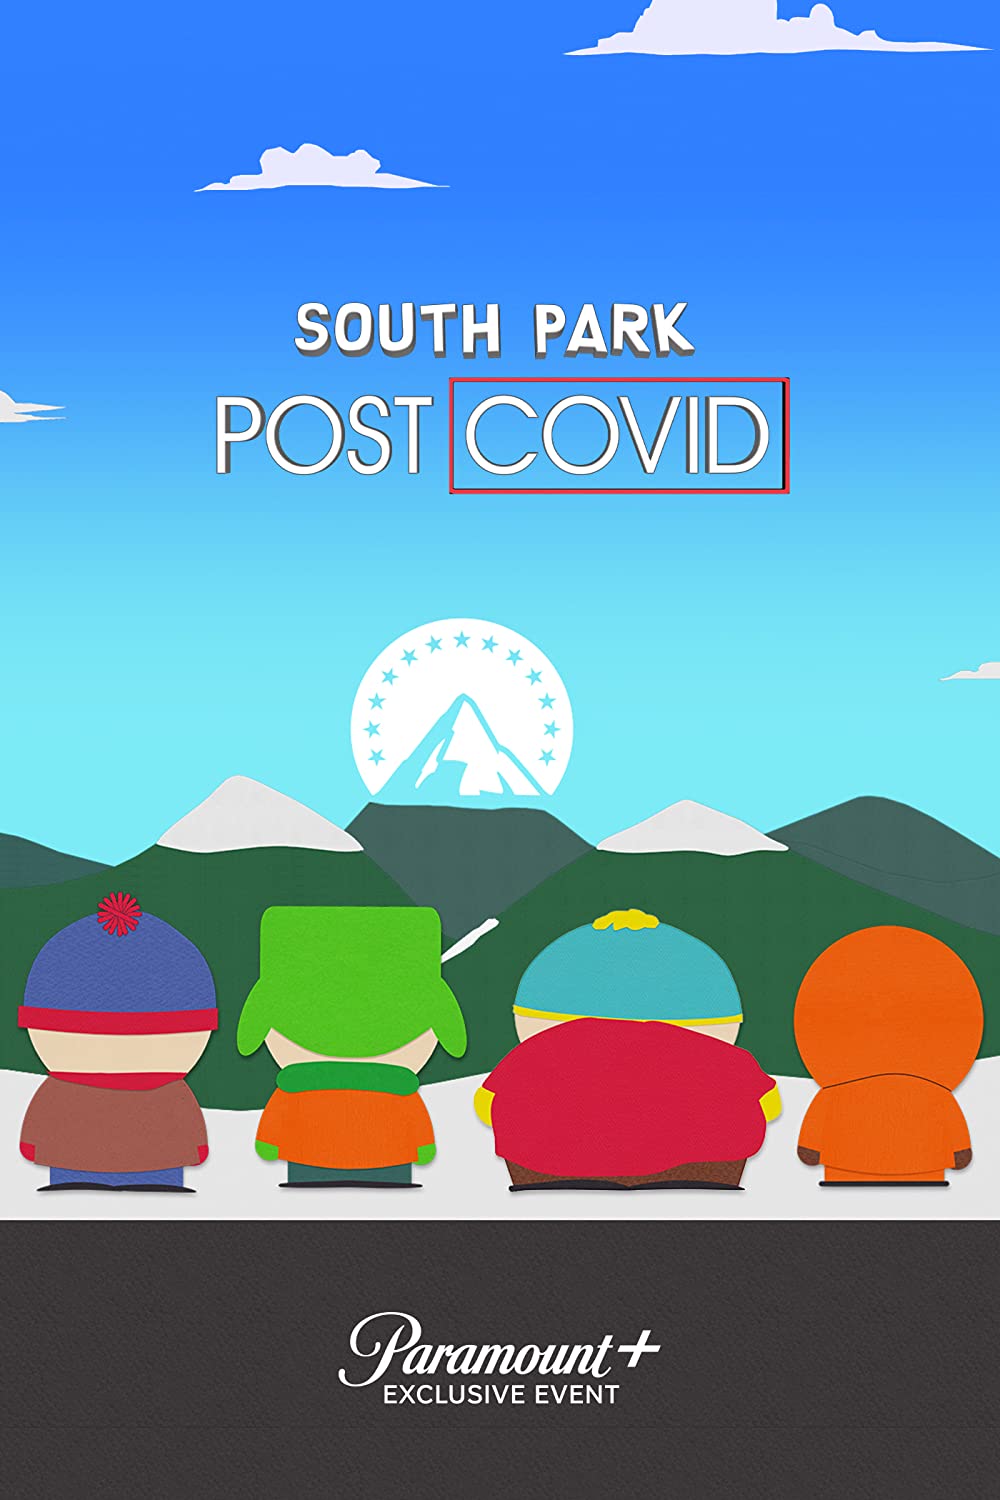 ดูหนังออนไลน์ฟรี South Park Post Covid (2021) เซาท์พาร์ก โพสต์ โควิด